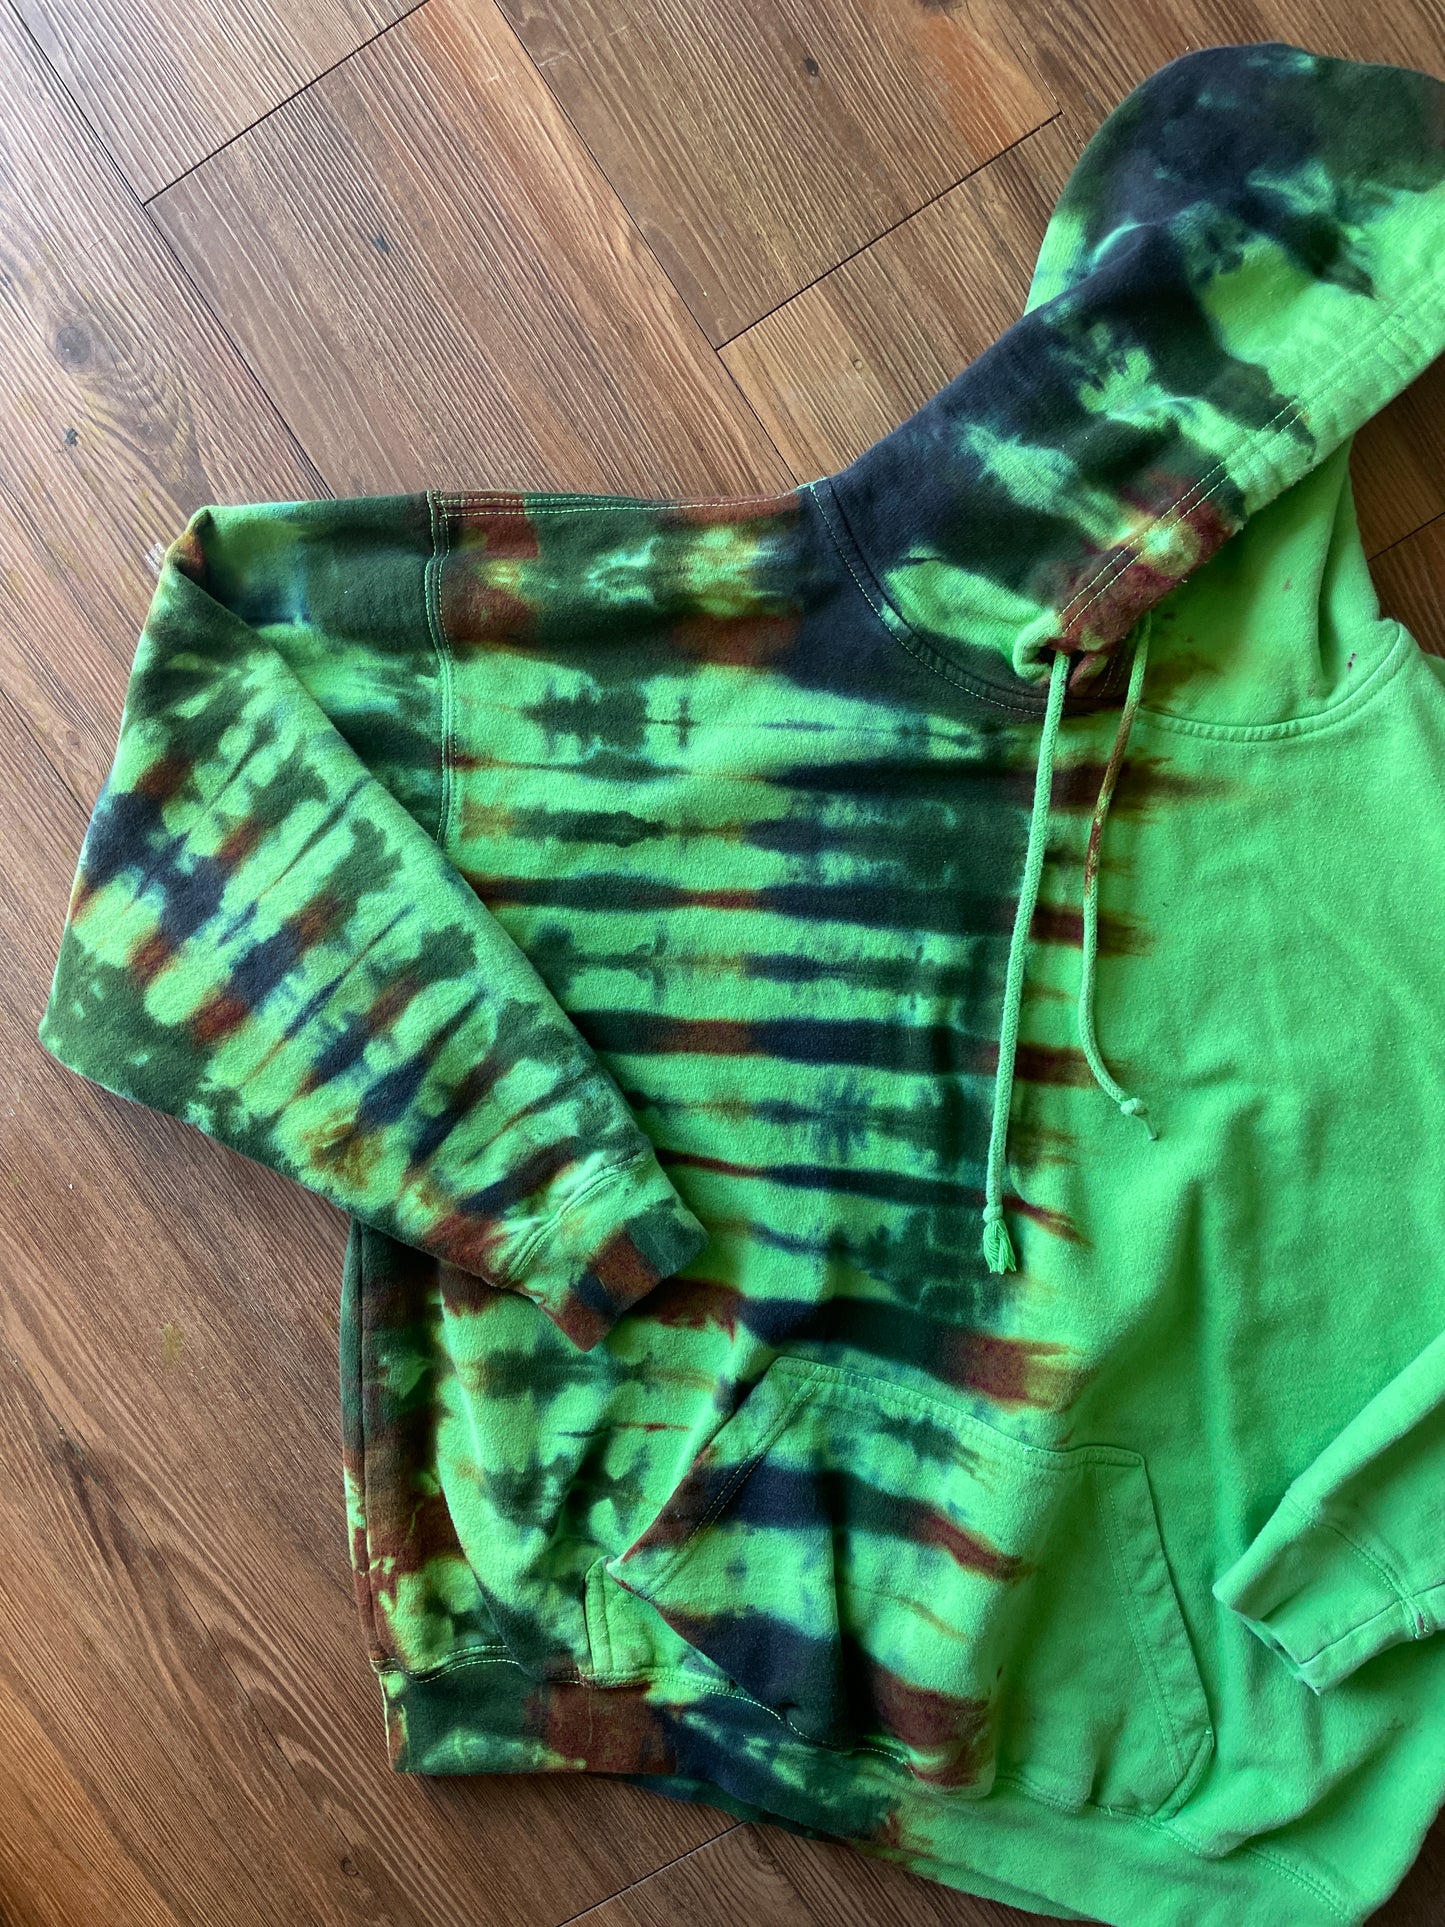 M/L Men’s Green and Brown Handmade Tie Dye Hoodie | One-Of-a-Kind Earth Tones Long Sleeve Sweatshirt